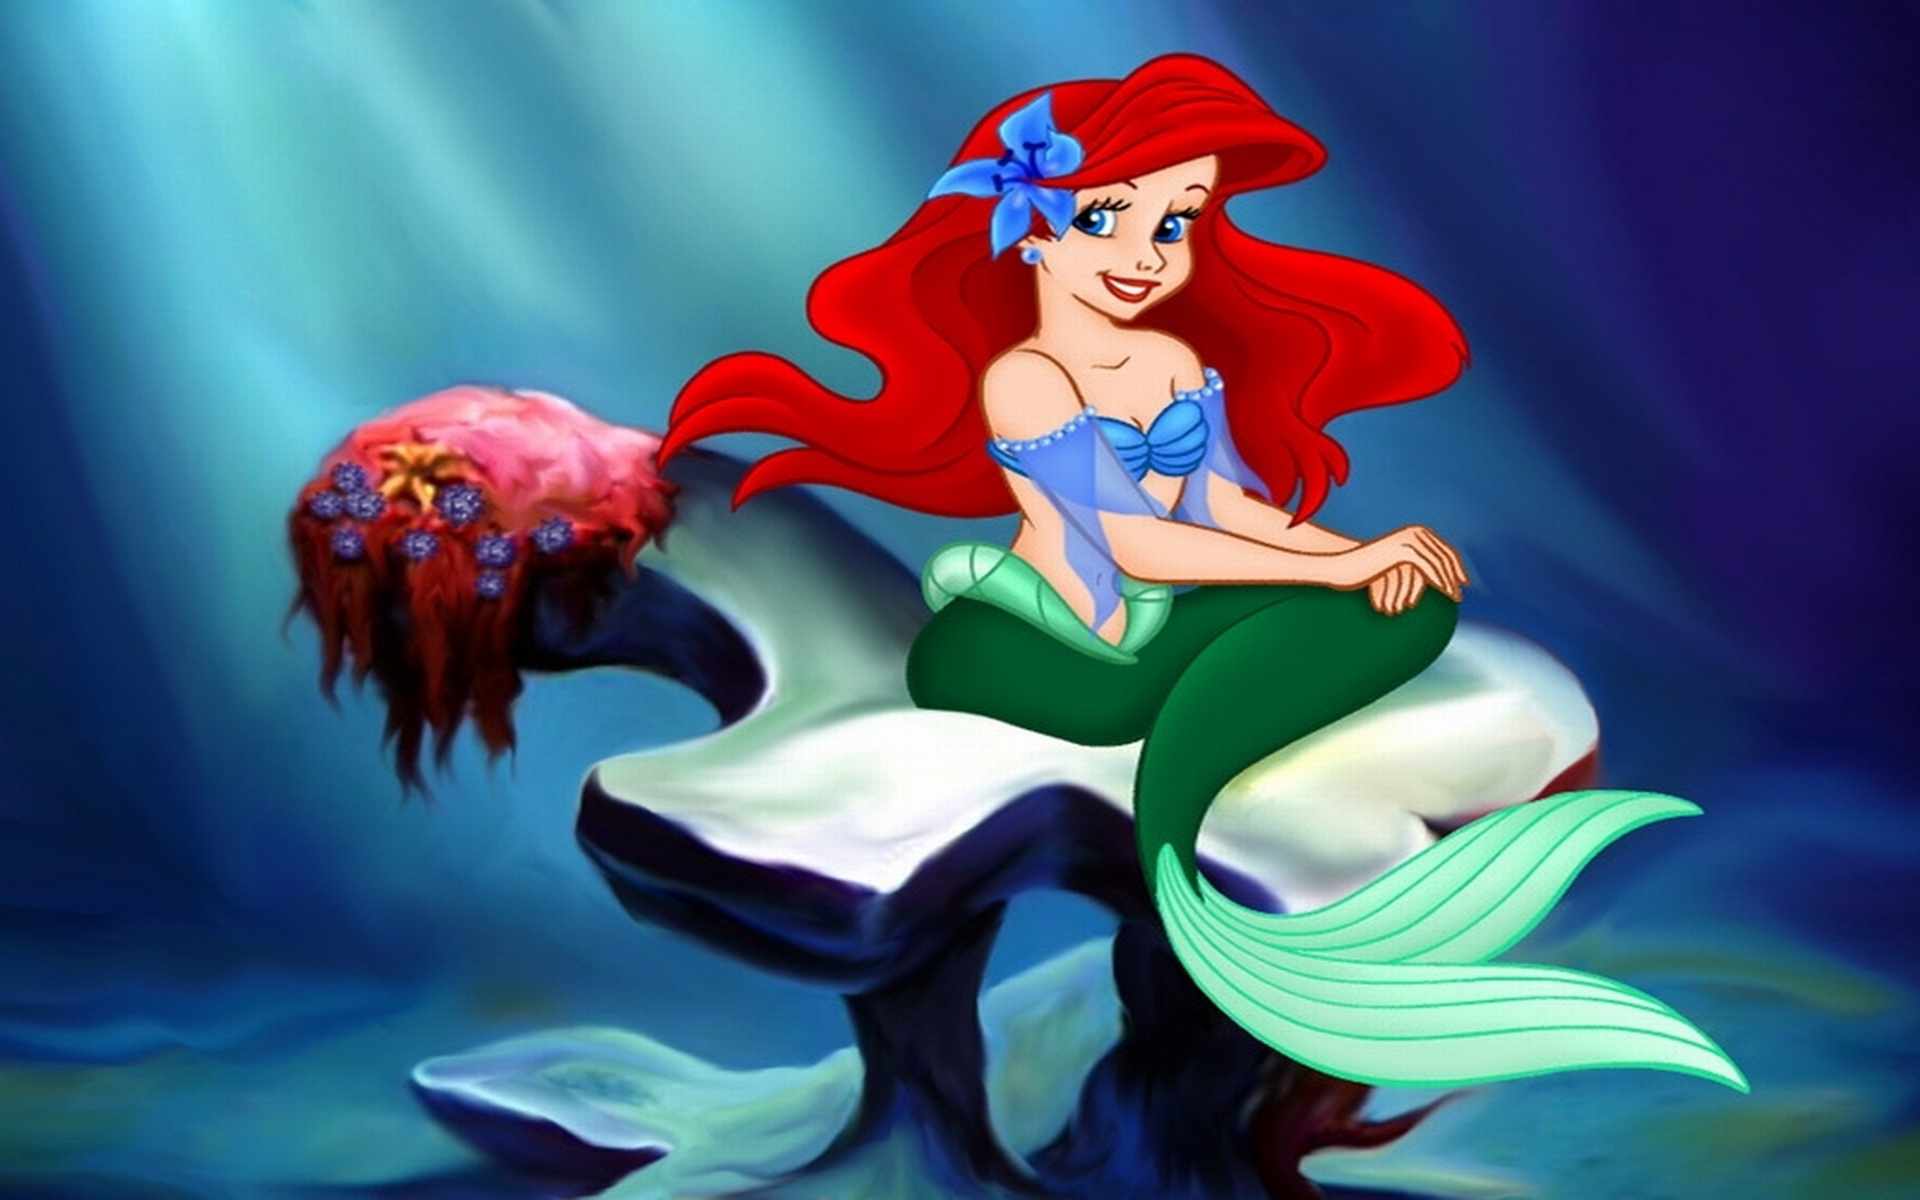 the little mermaid, movie, the little mermaid (1989), ariel (the little mermaid), mermaid, red hair